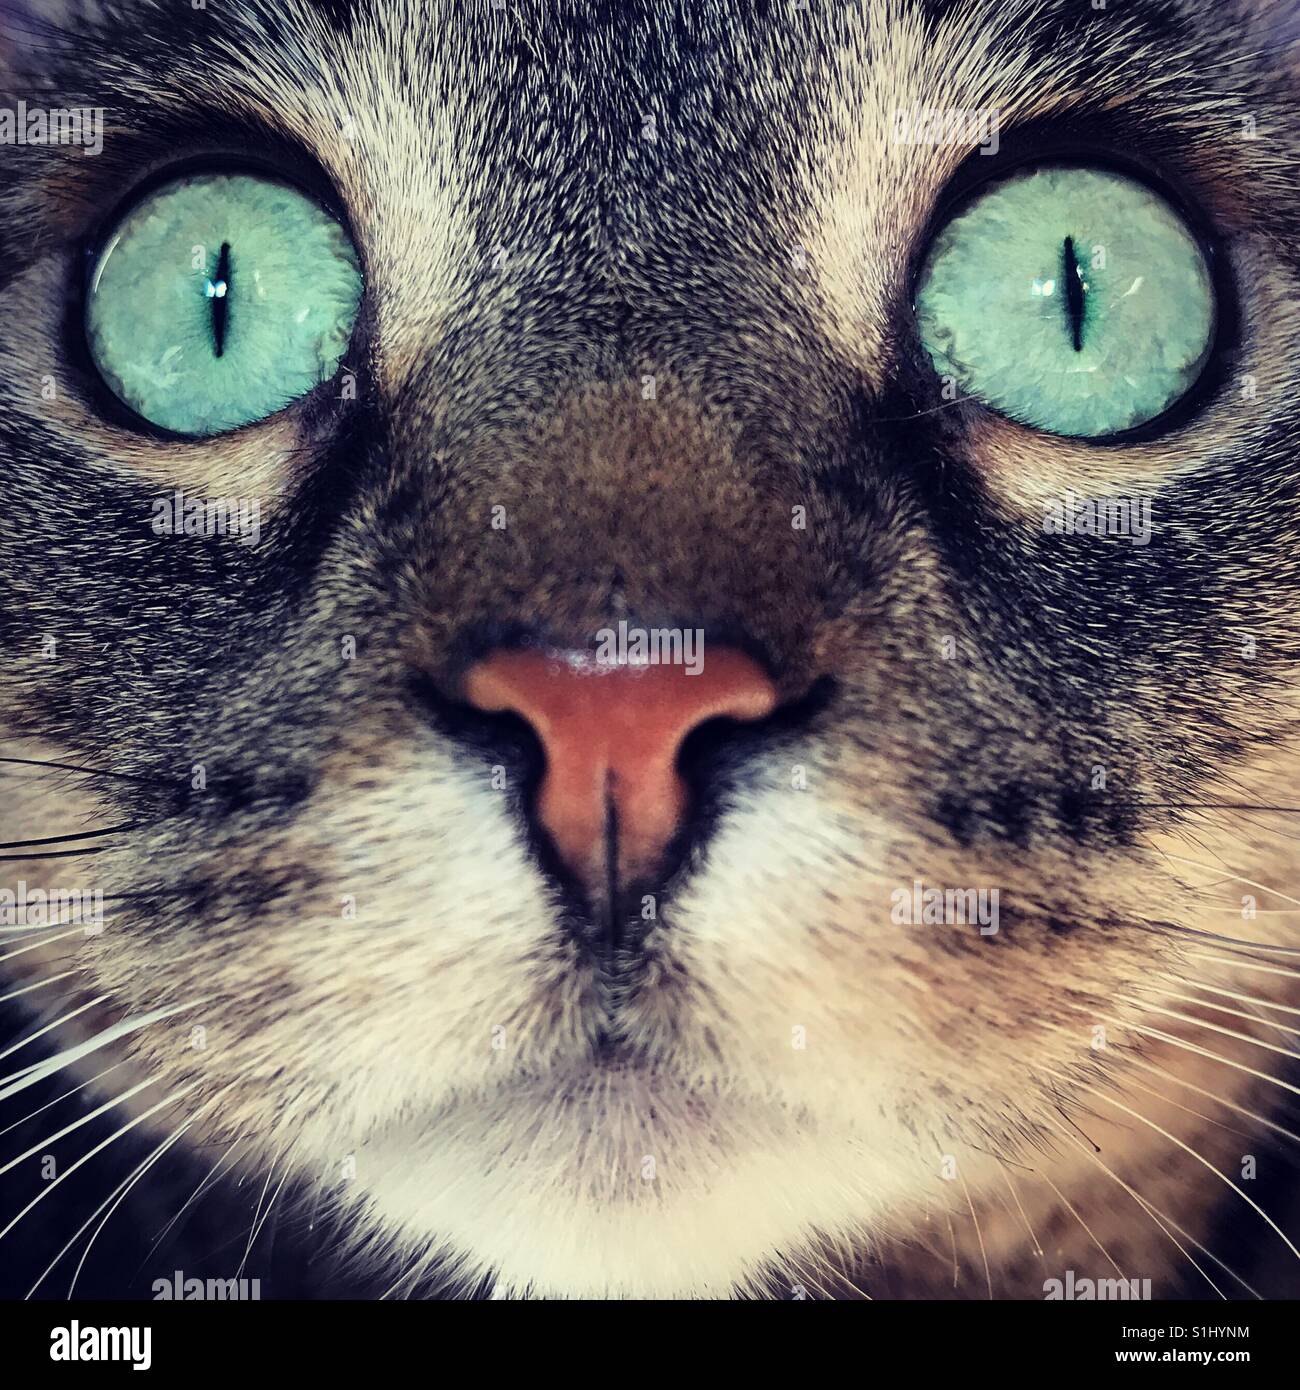 Cat face closeup Stock Photo